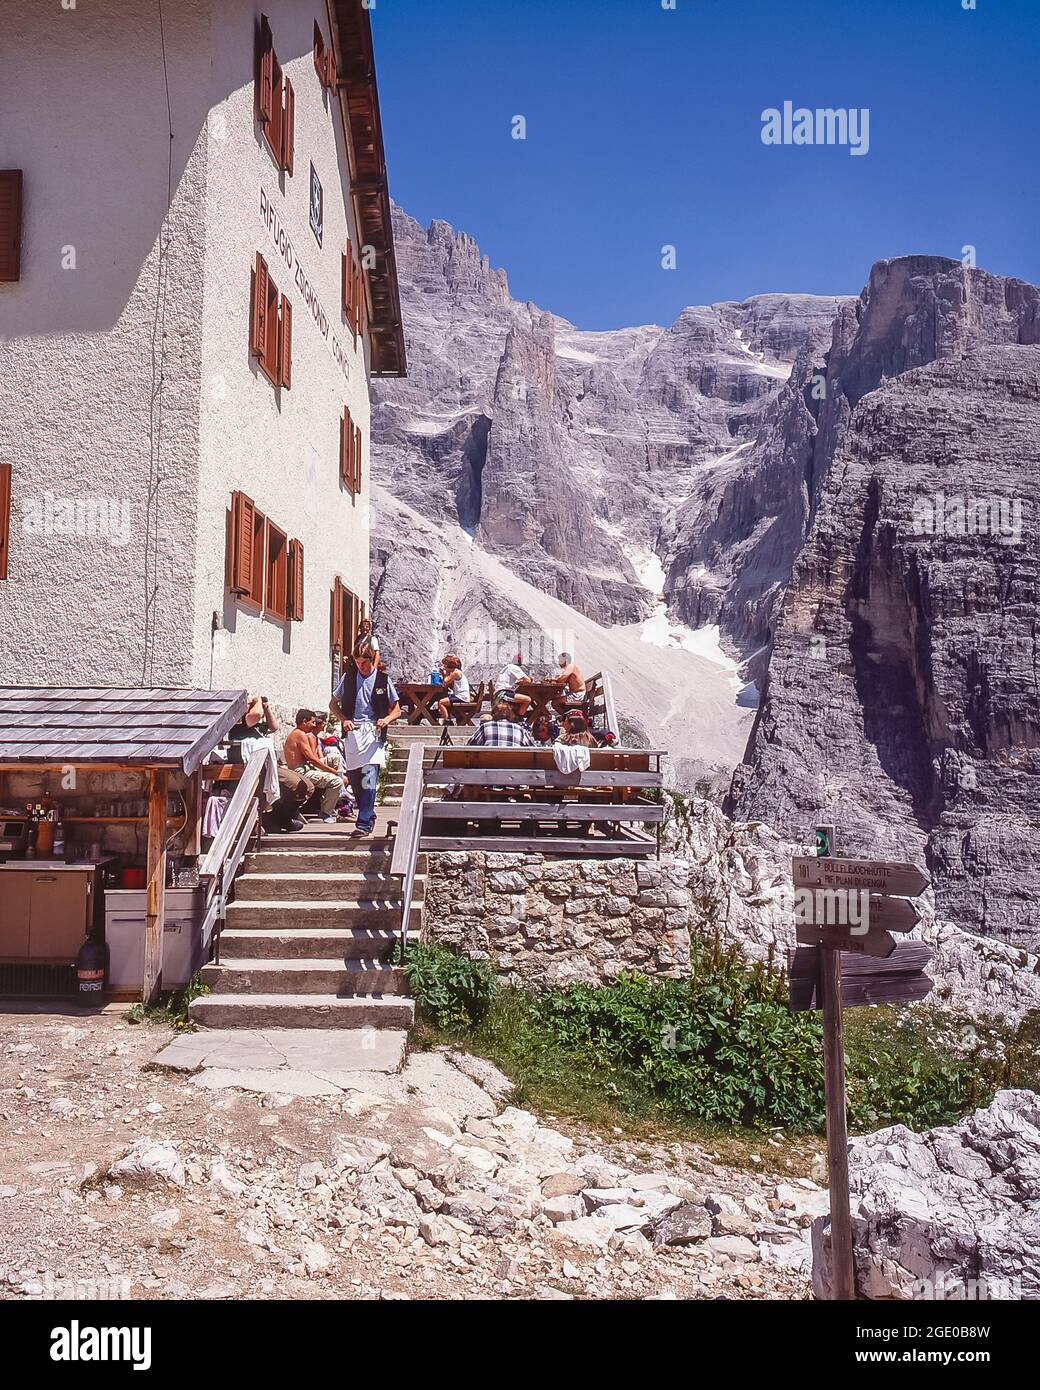 Si tratta del rifugio alpino del Rifugio Comici-Zsigmondy con la vetta Elferkogel nelle Dolomiti di Sexton-Sesto, nell'Alto Adige del Sud Tirolo Foto Stock